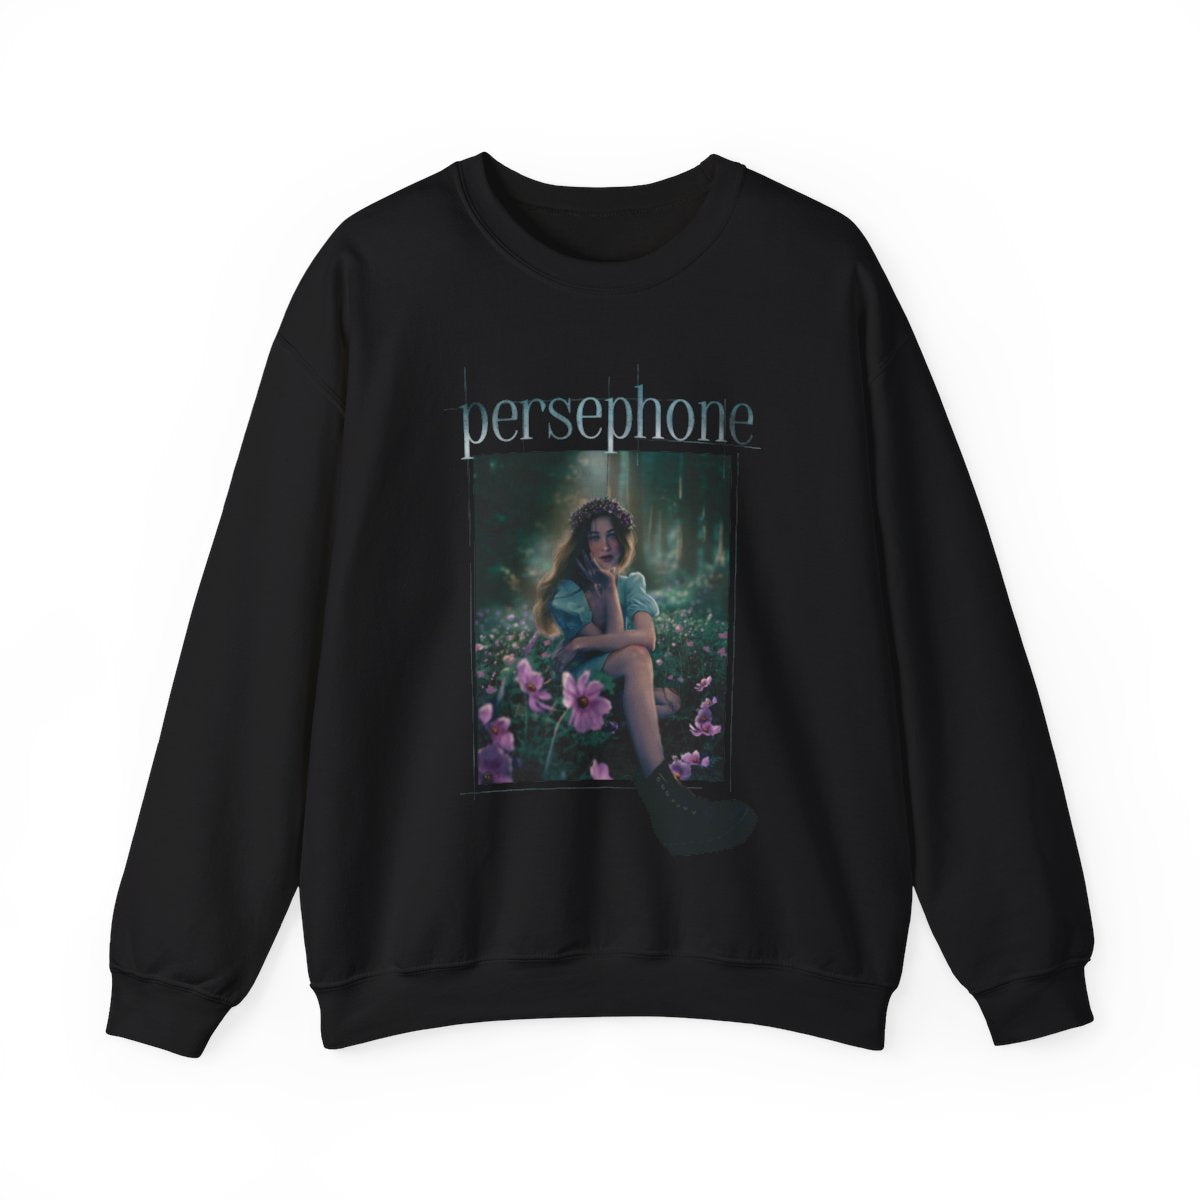 Persephone Graphic Sweatshirt